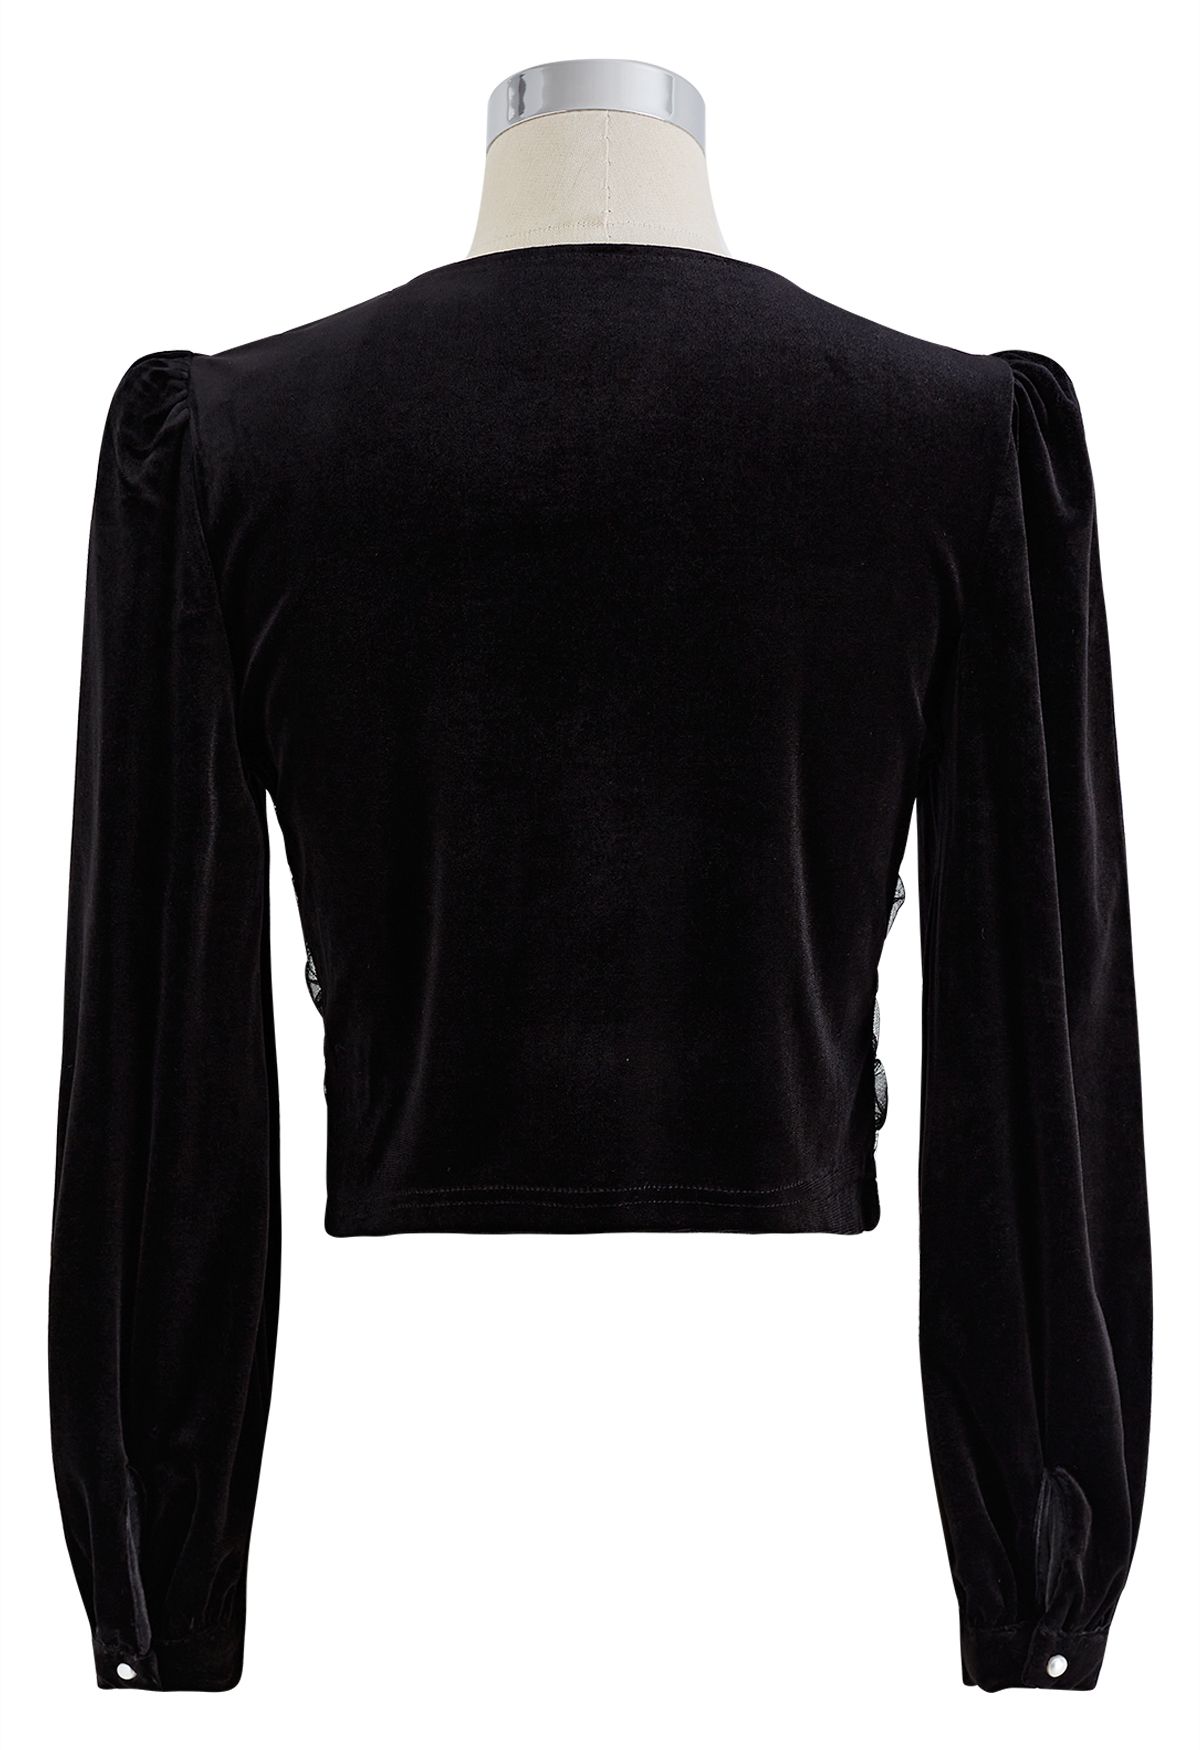 T-shirt Crop top Clothing Velvet, T-shirt, fashion, black png